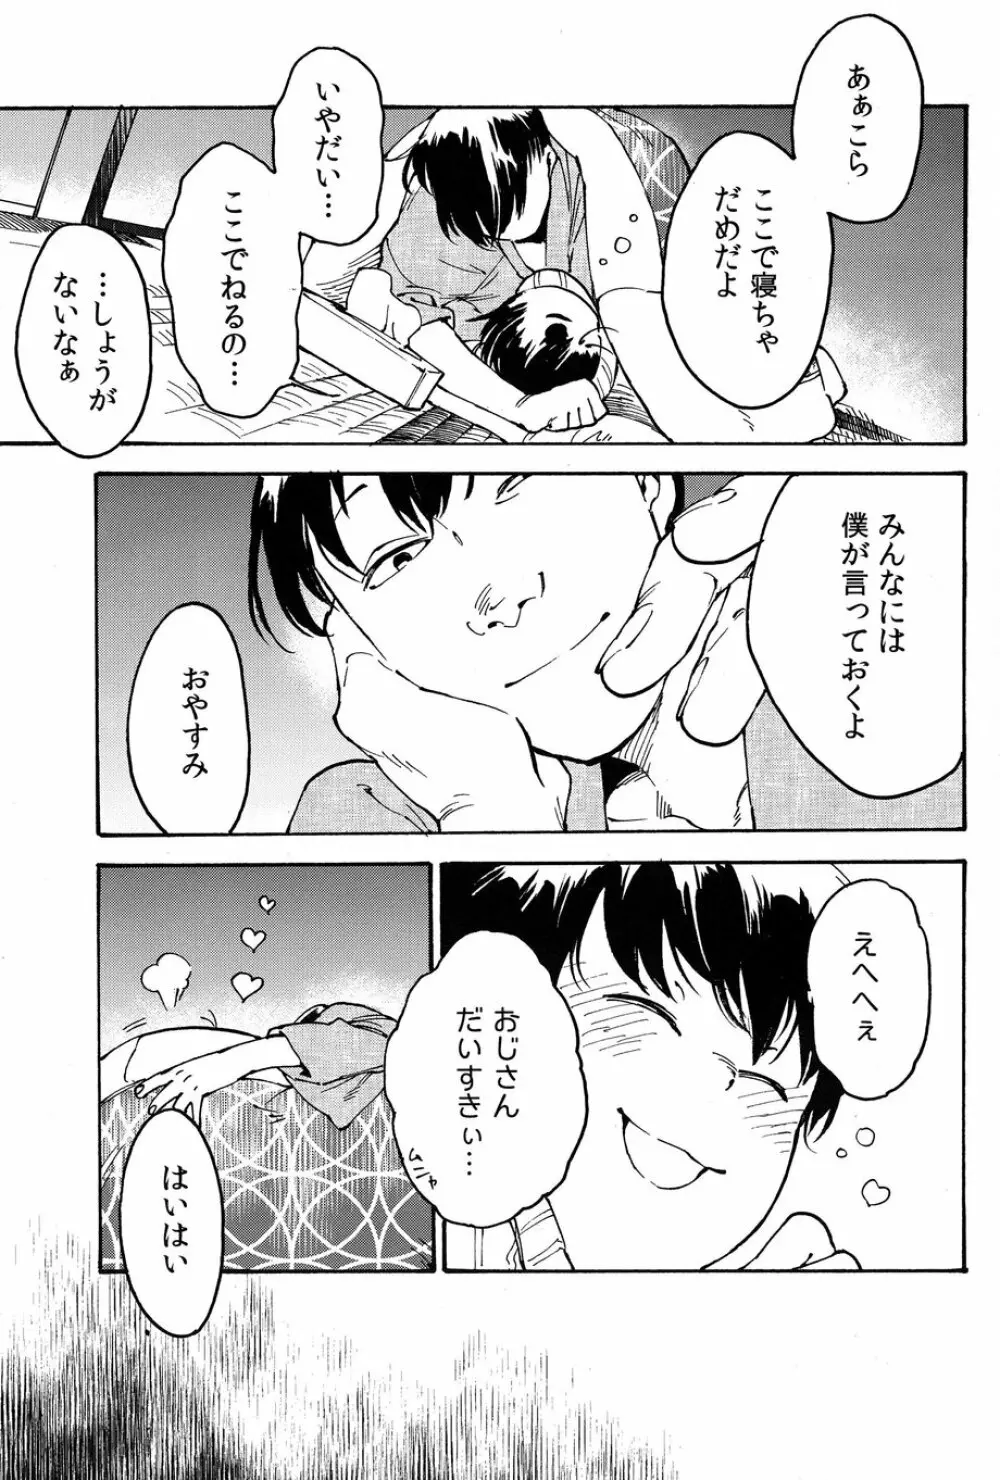 発覚前/発覚後 14ページ